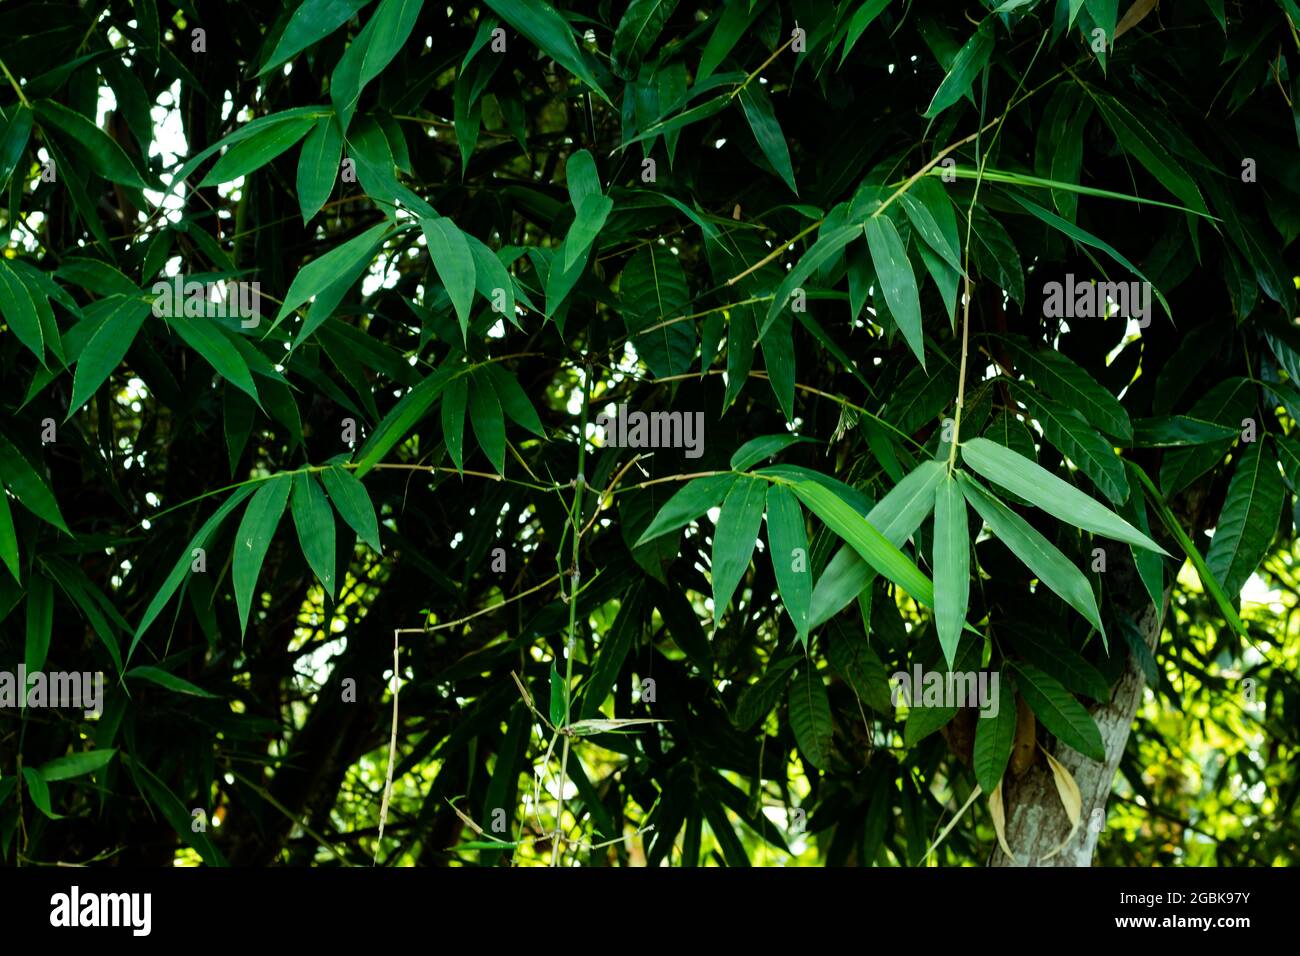 Bambusblätter Hintergrund auch Bambusblätter sind reich an Ballaststoffen, Proteinen und Kieselsäure, was zu vielen Anwendungsfällen im medizinischen Bereich führt Stockfoto